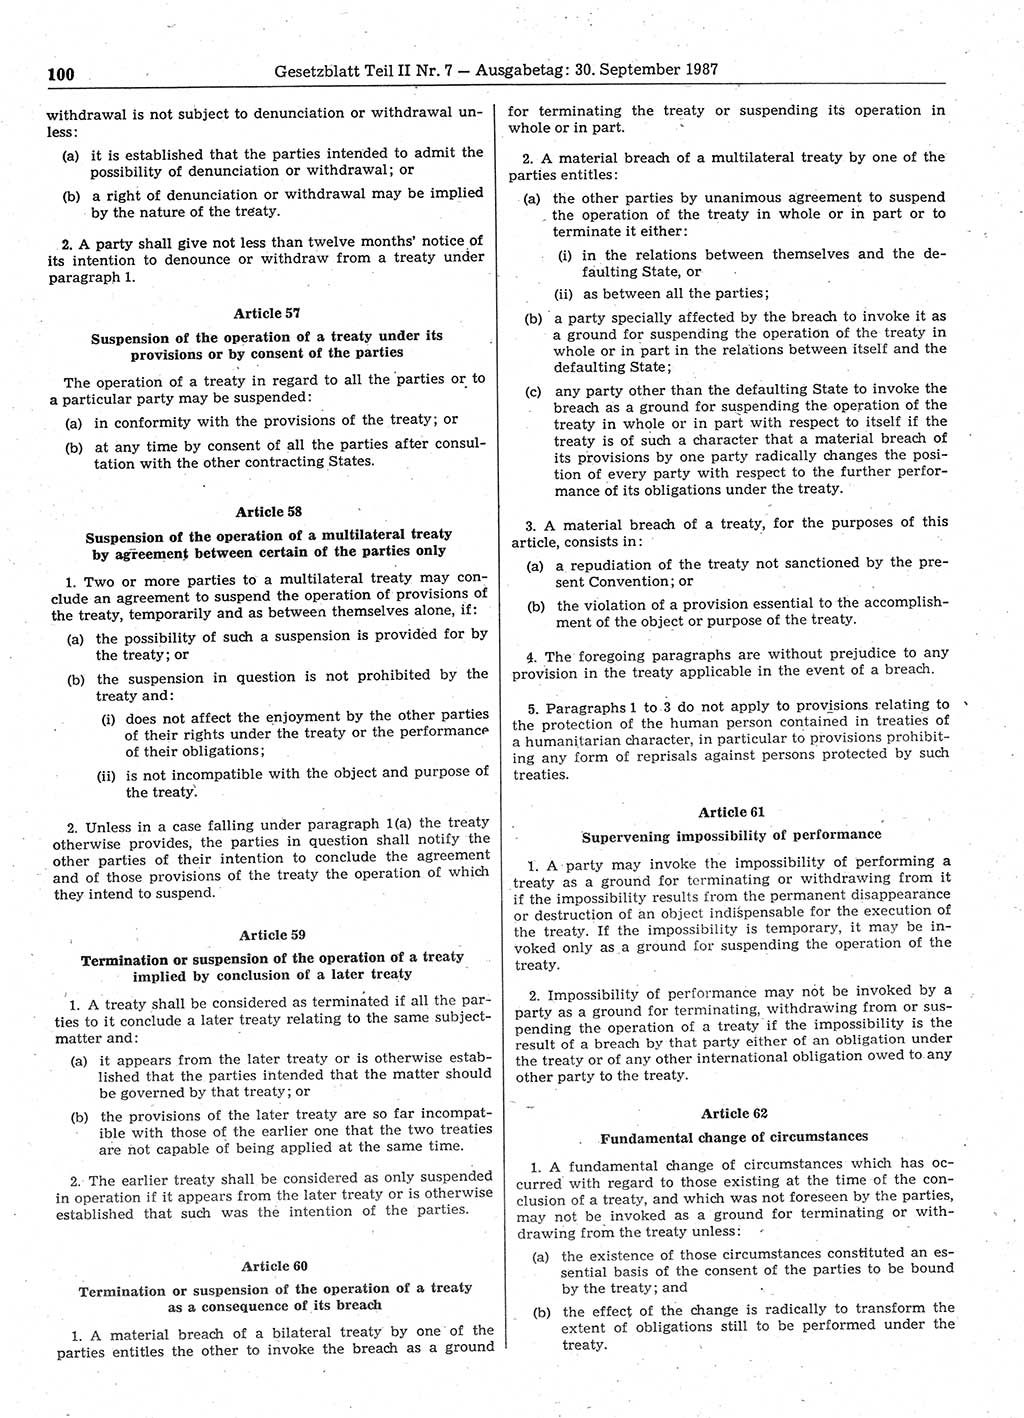 Gesetzblatt (GBl.) der Deutschen Demokratischen Republik (DDR) Teil ⅠⅠ 1987, Seite 100 (GBl. DDR ⅠⅠ 1987, S. 100)